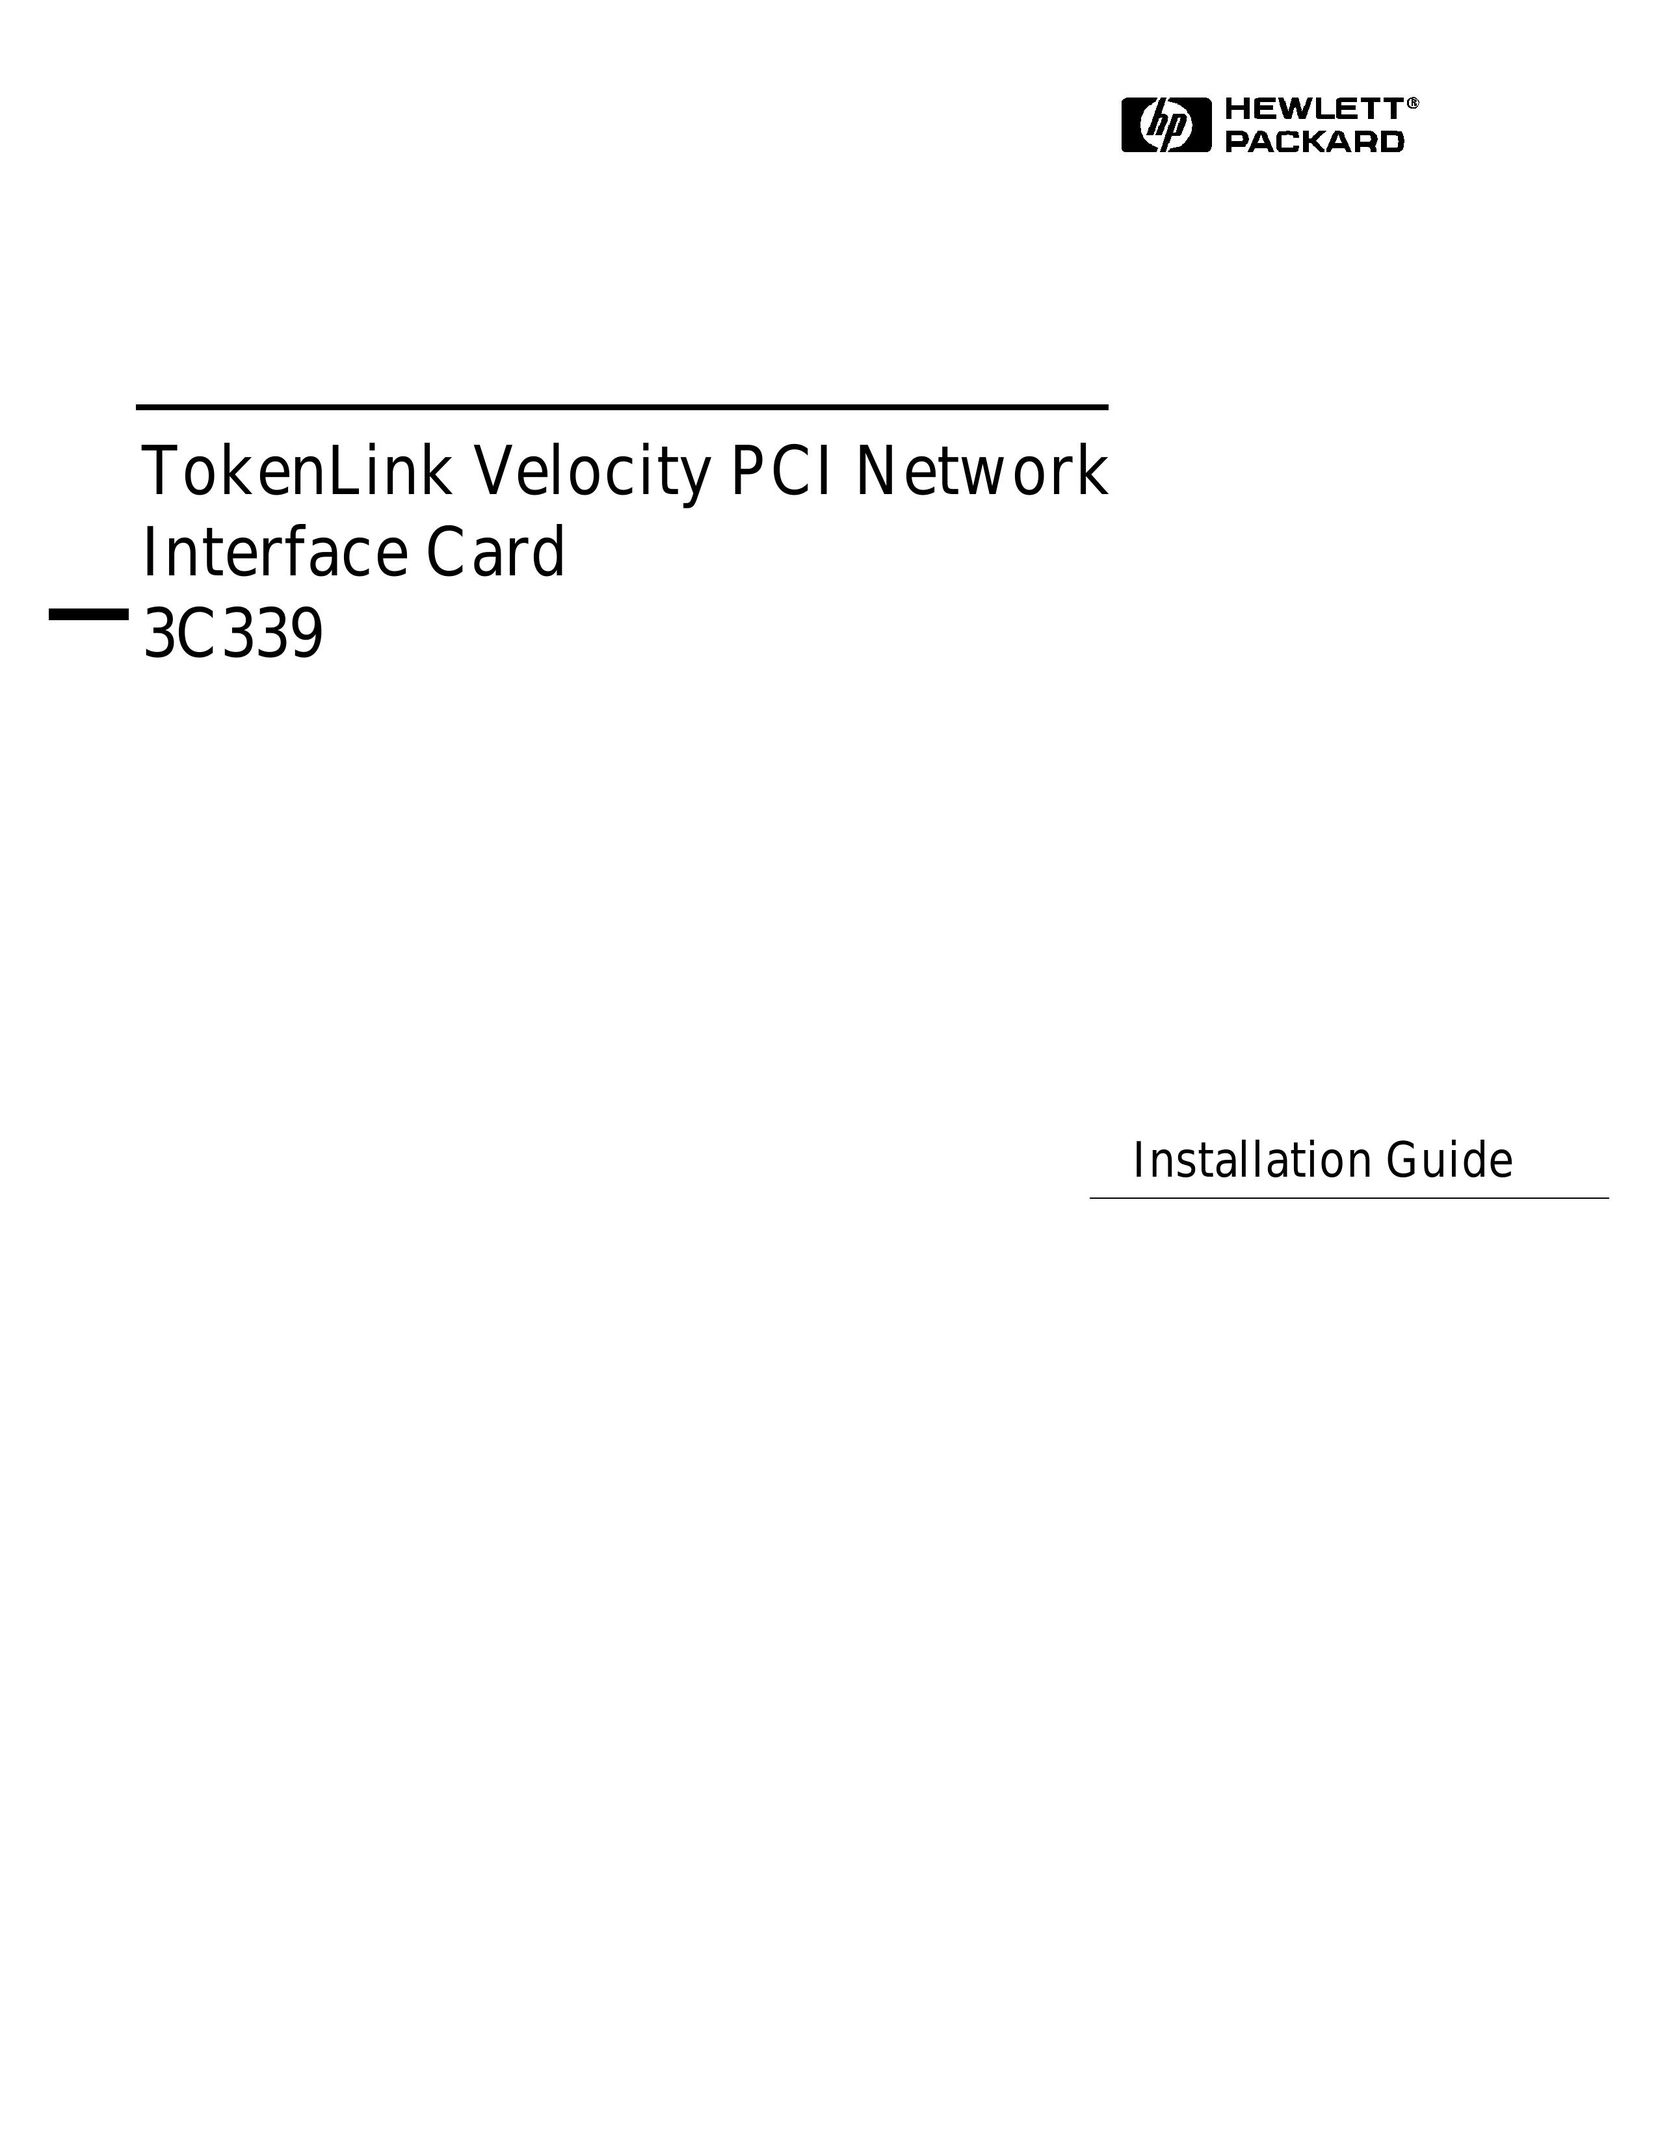 HP (Hewlett-Packard) 3C339 Network Card User Manual